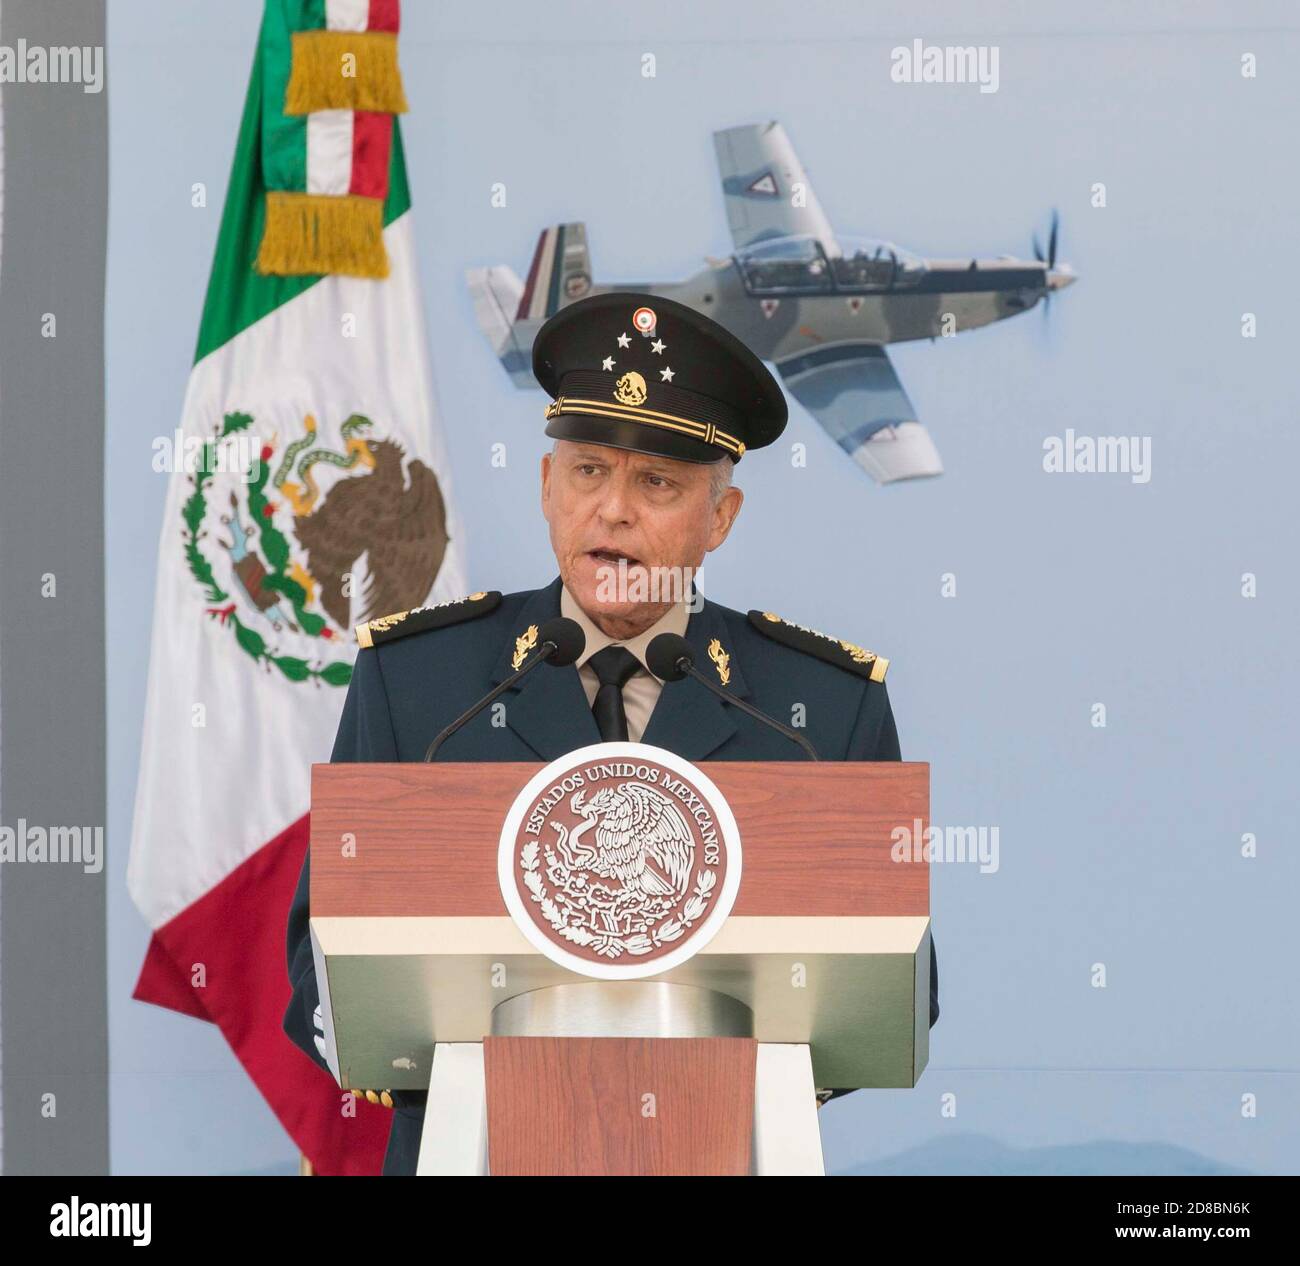 Le ministre mexicain de la Défense, le général Salvador Cienfuegos Zepeda, prononce un discours lors d'une cérémonie de promotion le 26 juillet 2017 à Mexico, au Mexique. Cienfuegos a été arrêté le 16 octobre 2020 à l'aéroport international de Los Angeles et accusé de corruption liée à la drogue. Banque D'Images